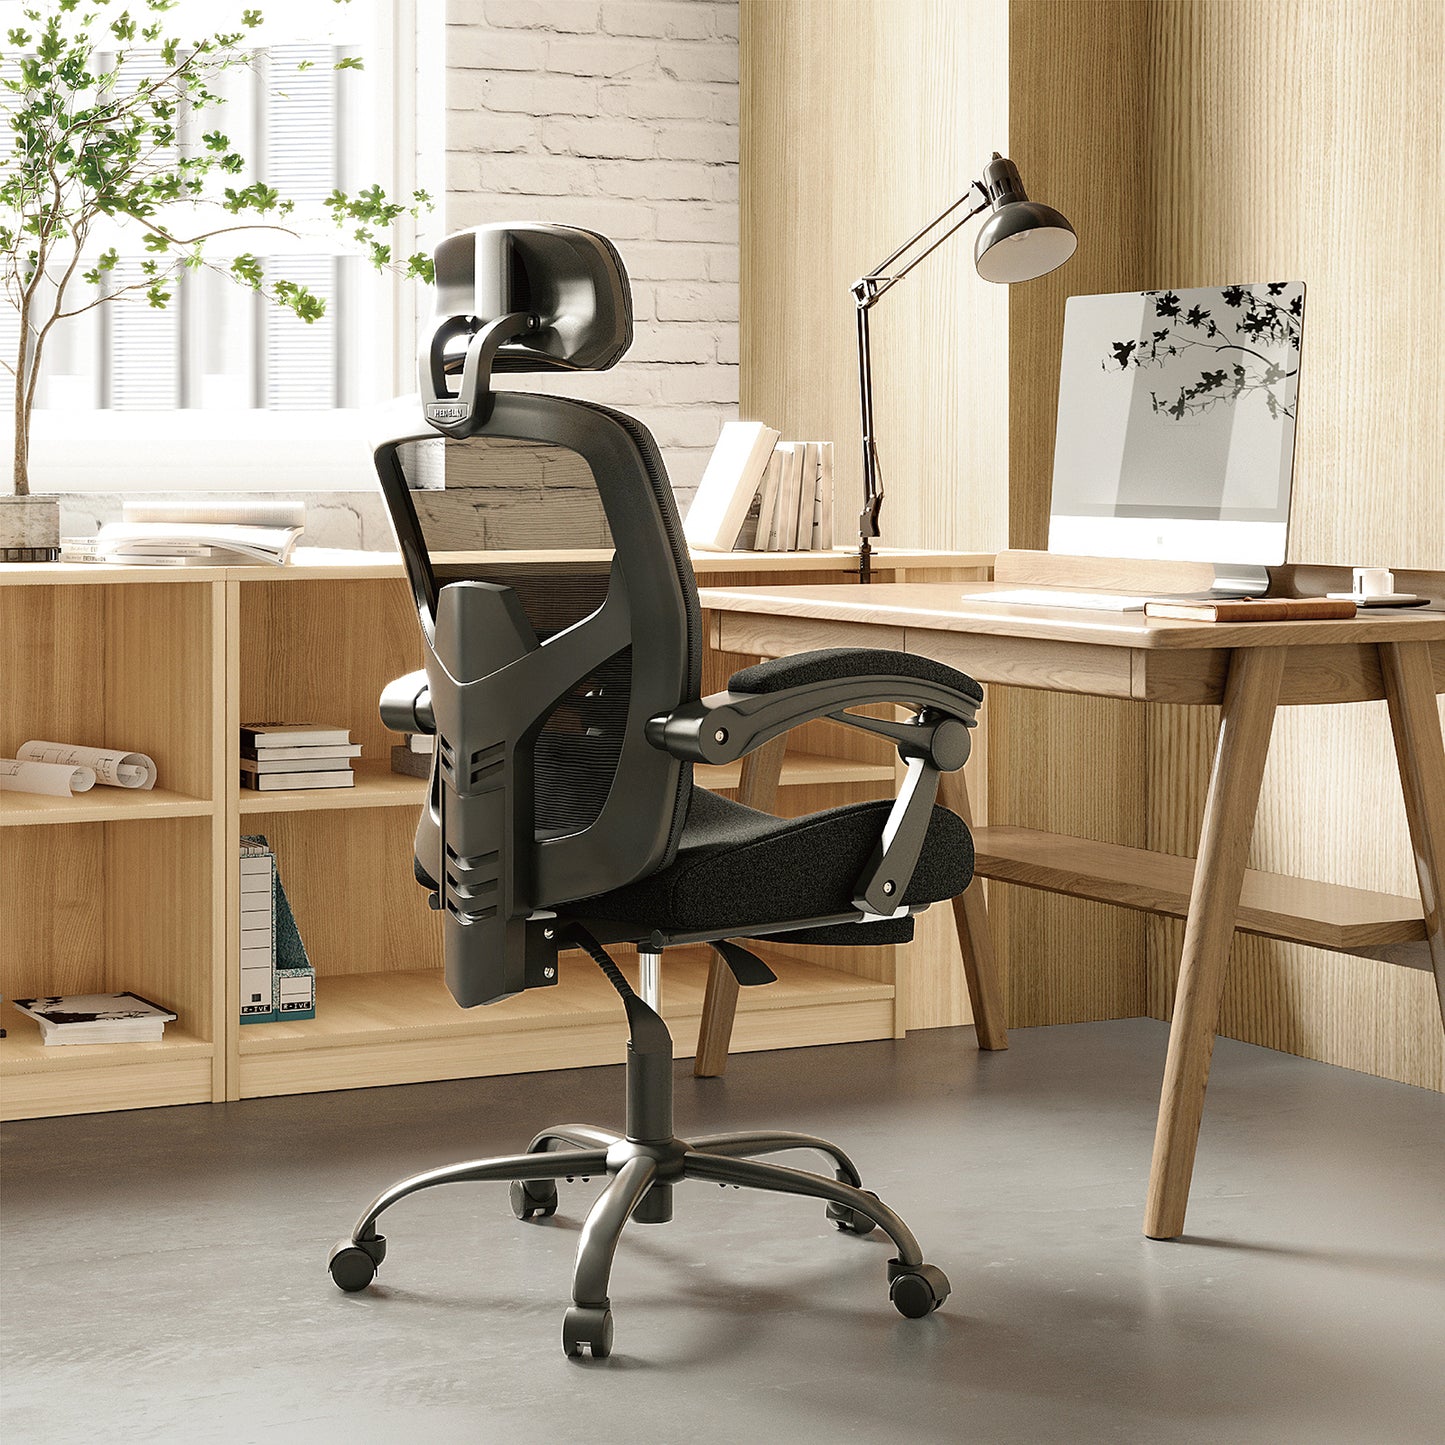 Ergonomic Office Chair Lumbar Support Pillow Computer Desk Chair